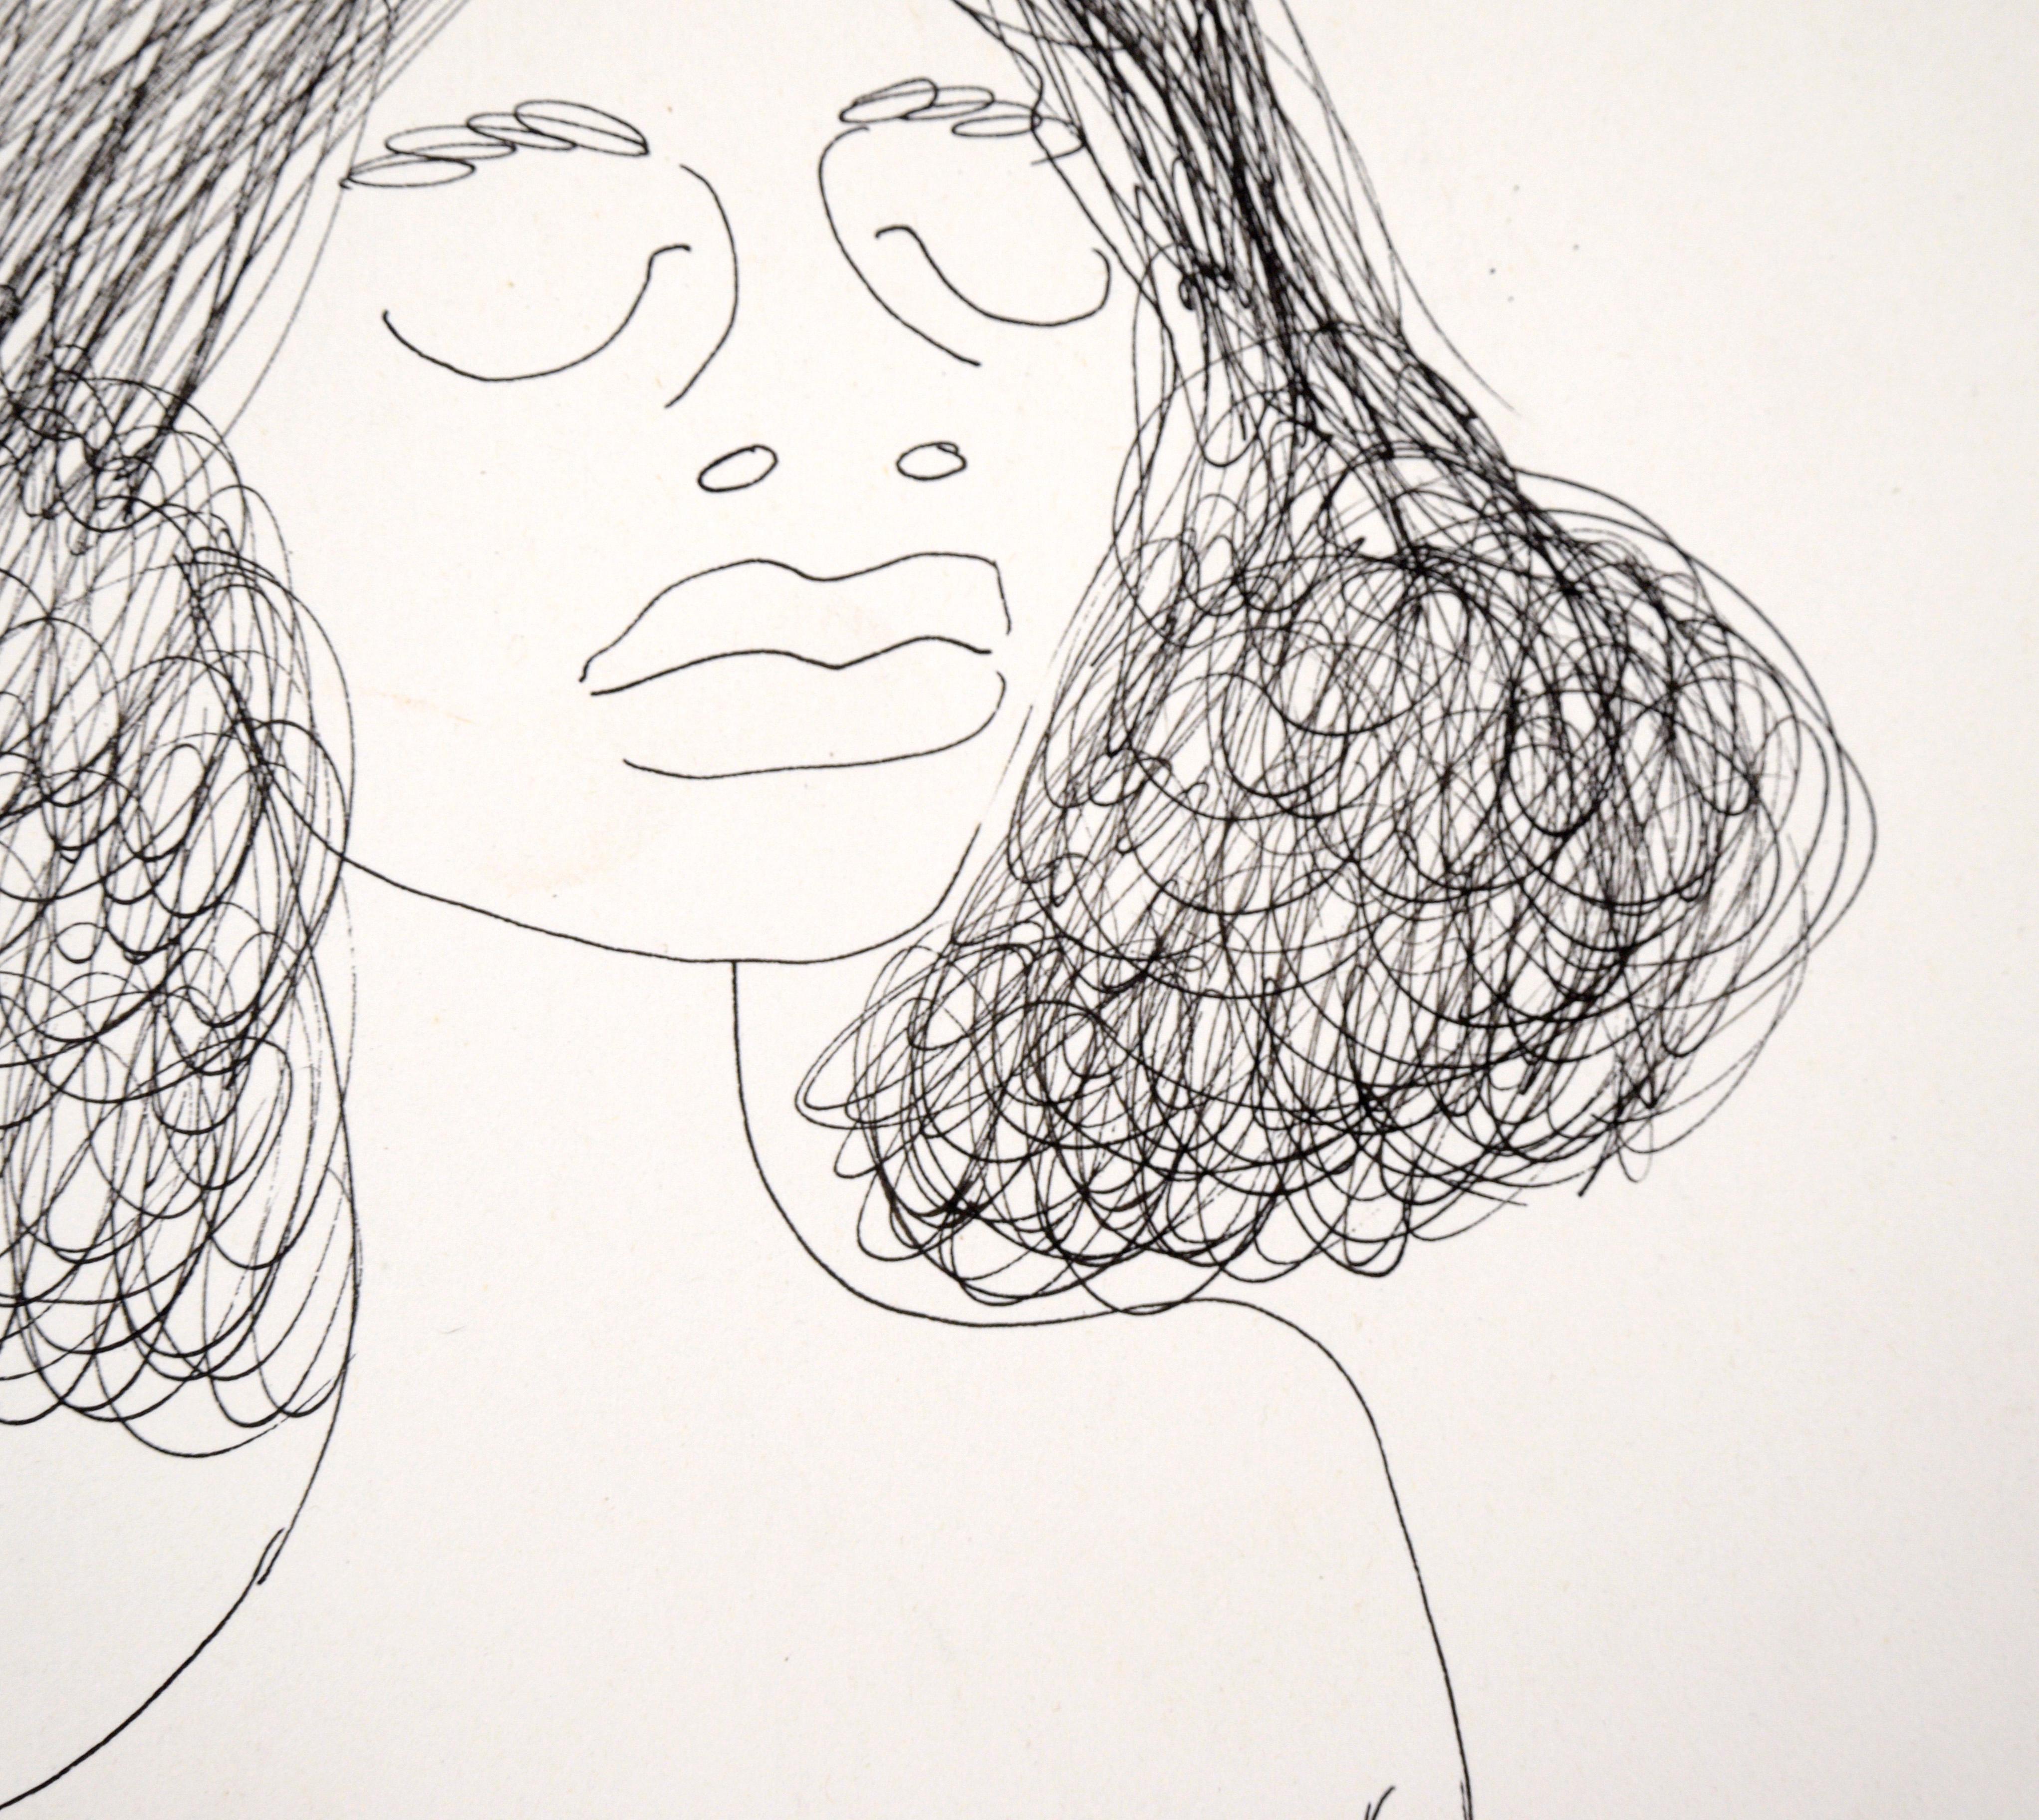 Aktporträt einer Frau mit lockigem Haar - Zeichnung mit Stift auf Papier

Stilisierte Zeichnung des unbekannten Künstlers 